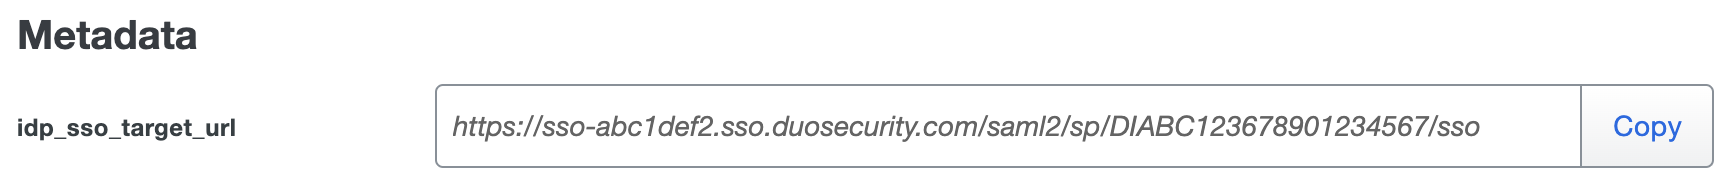 Duo GitLab self-managed Metadata URL